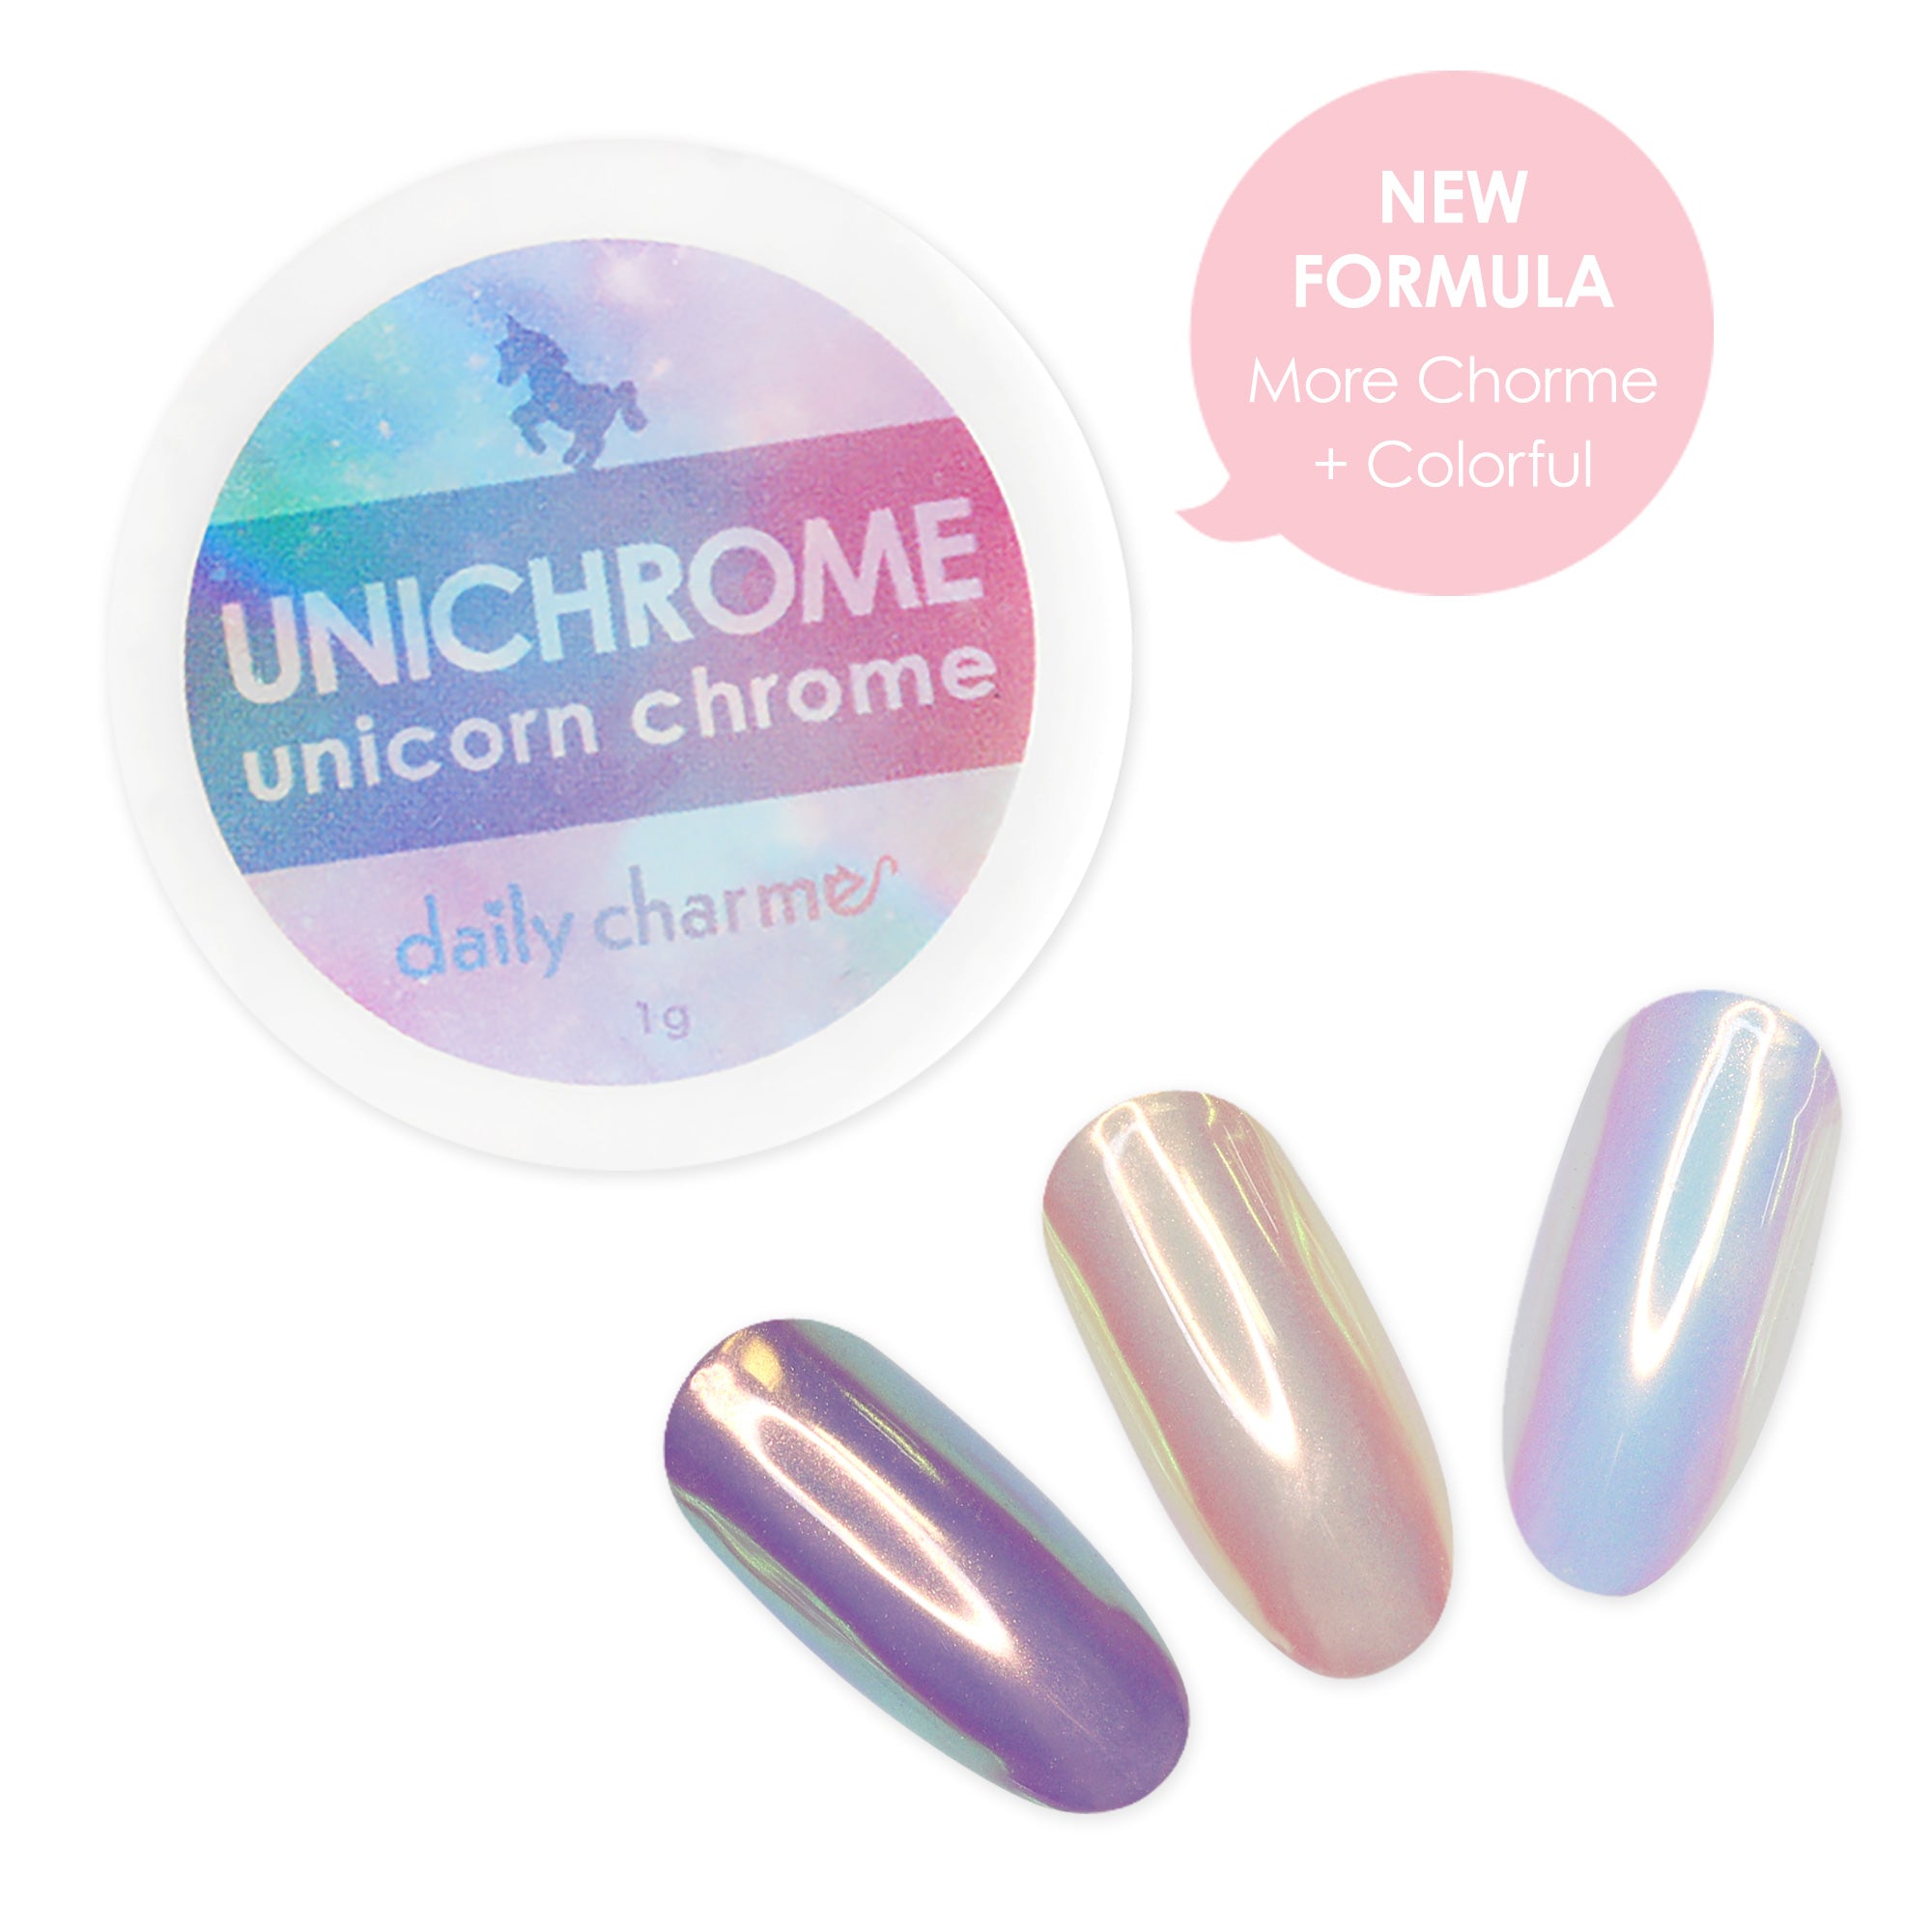 Unichrome Aurora Unicorn Chrome Powder Nail Art AB Effect